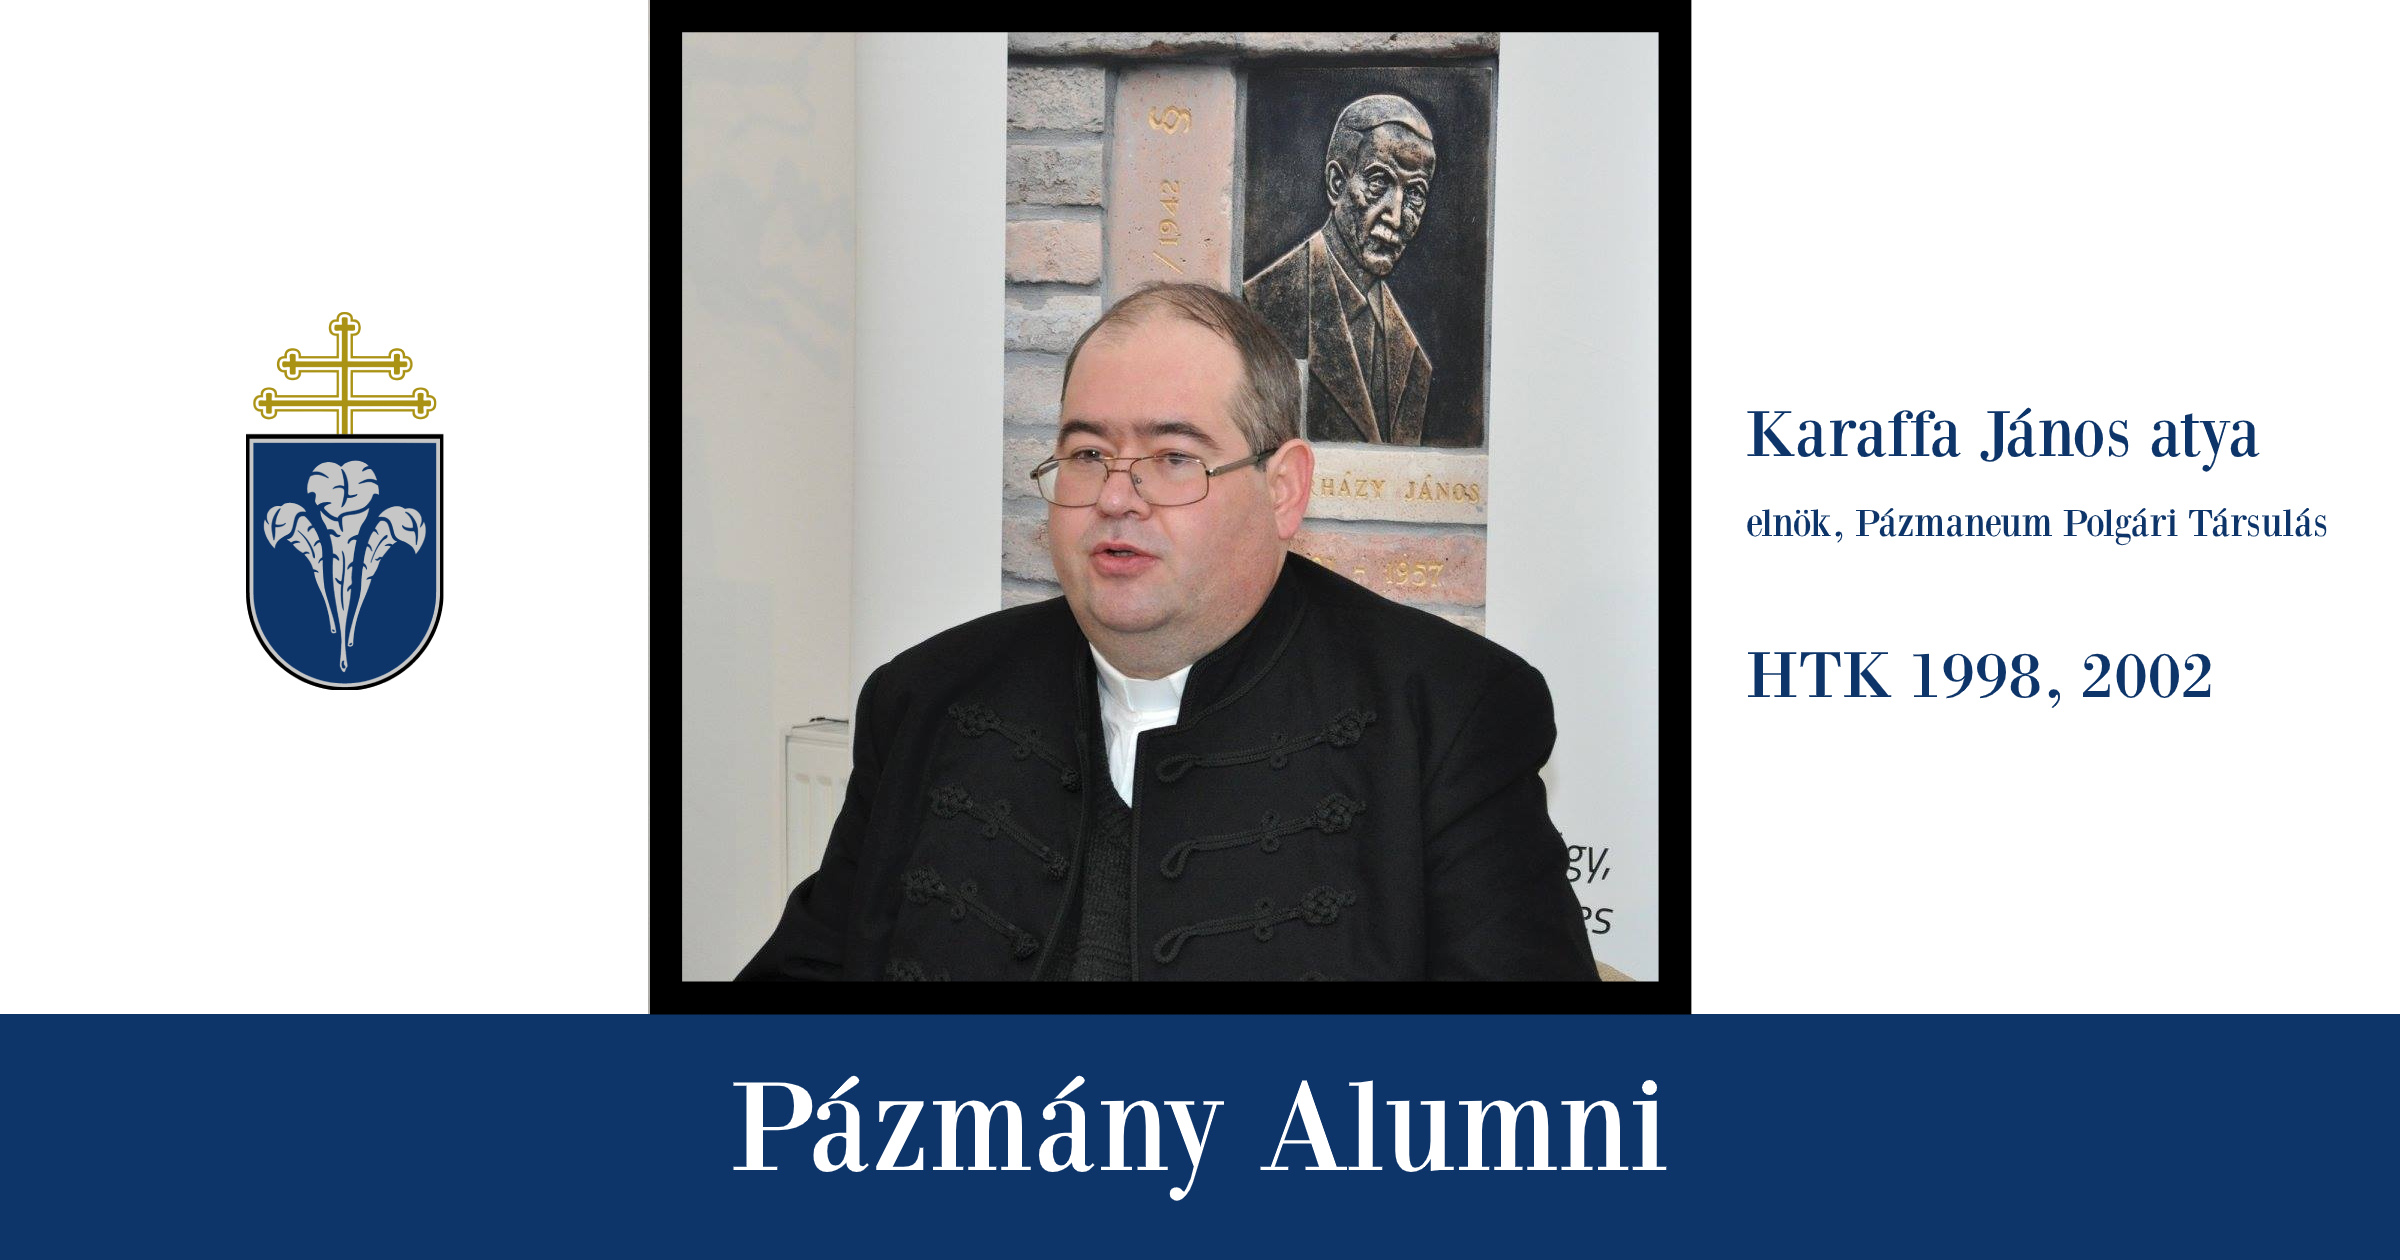 Pázmány Alumni: interjú Karaffa János atyával, a HTK egykori hallgatójával